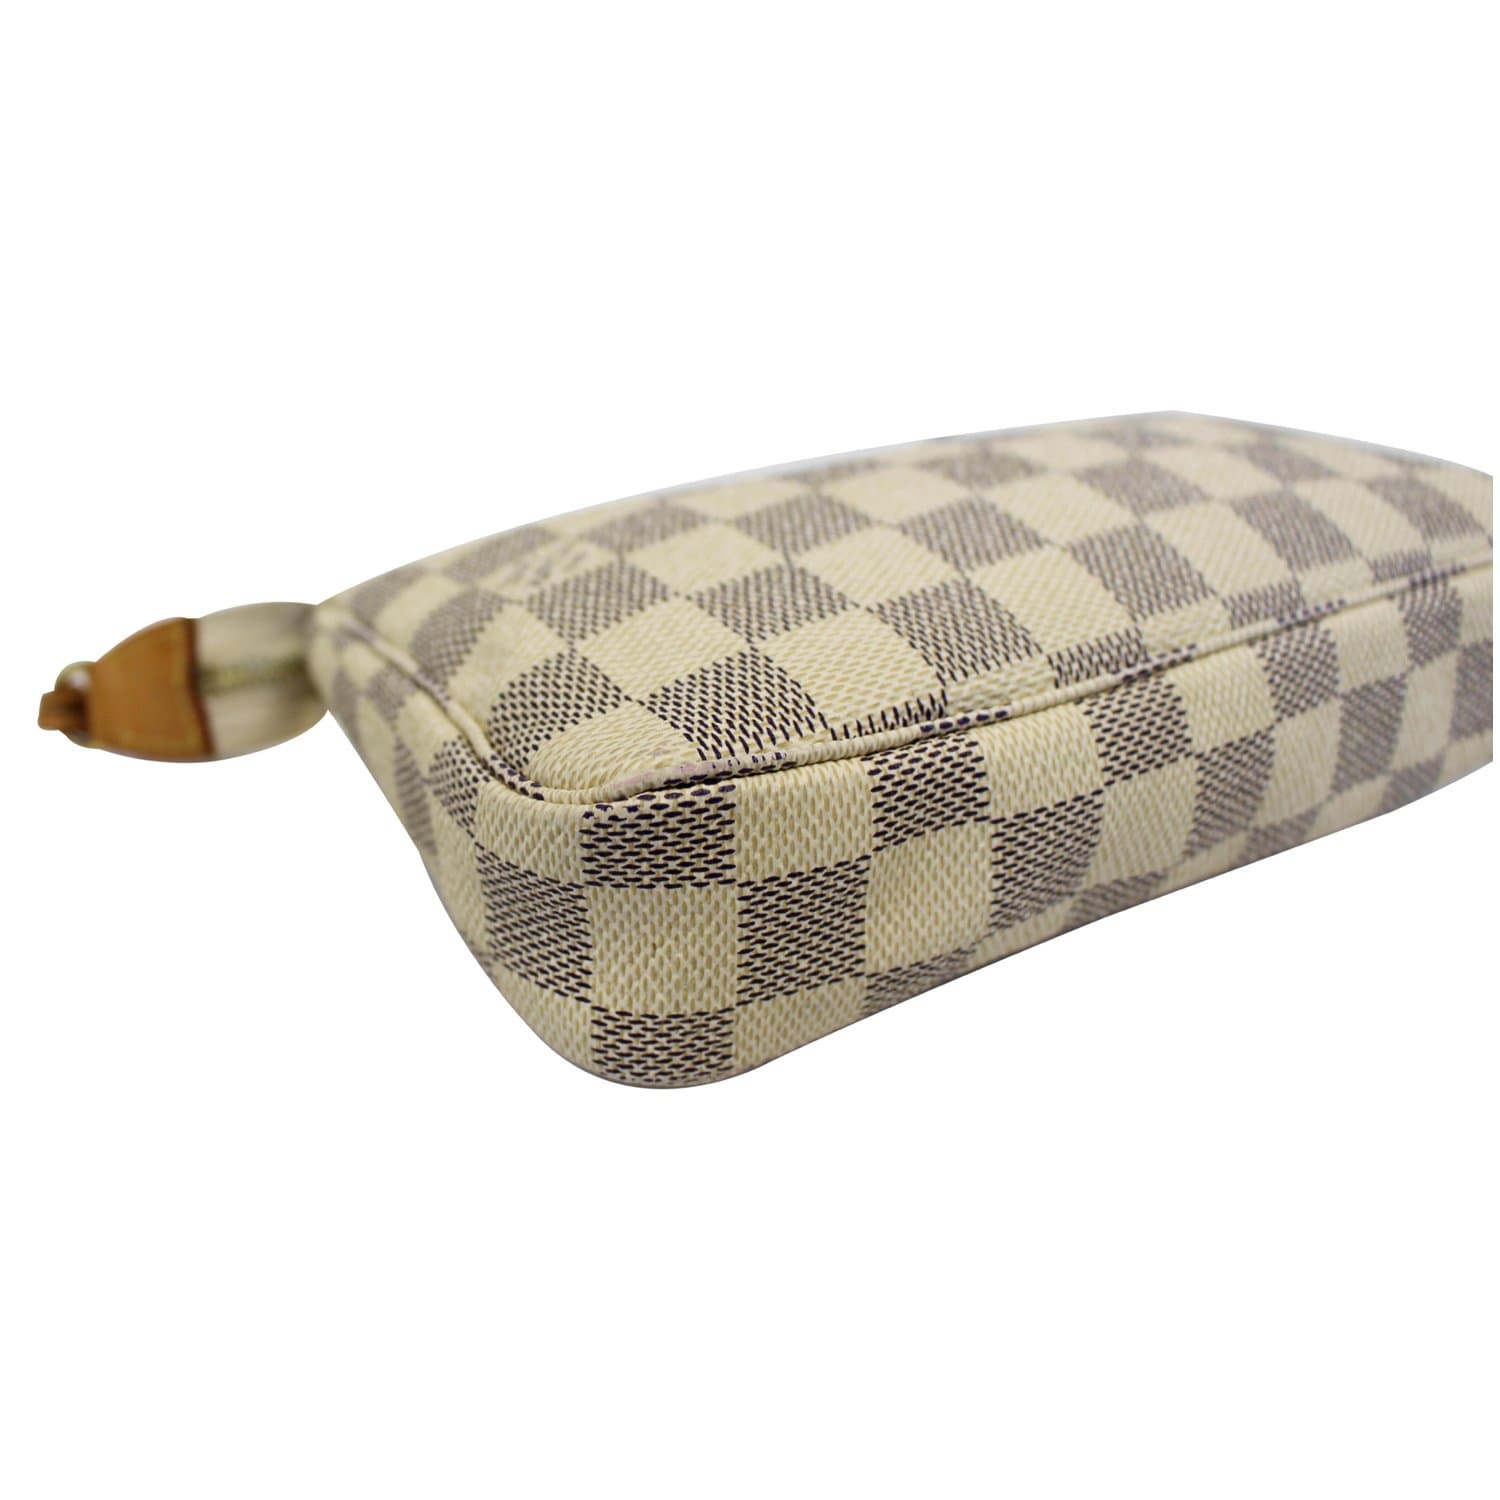 🔥NEW LOUIS VUITTON Pochette Accessories Damier Azur Shoulder Pouch Bag  GIFT❤️